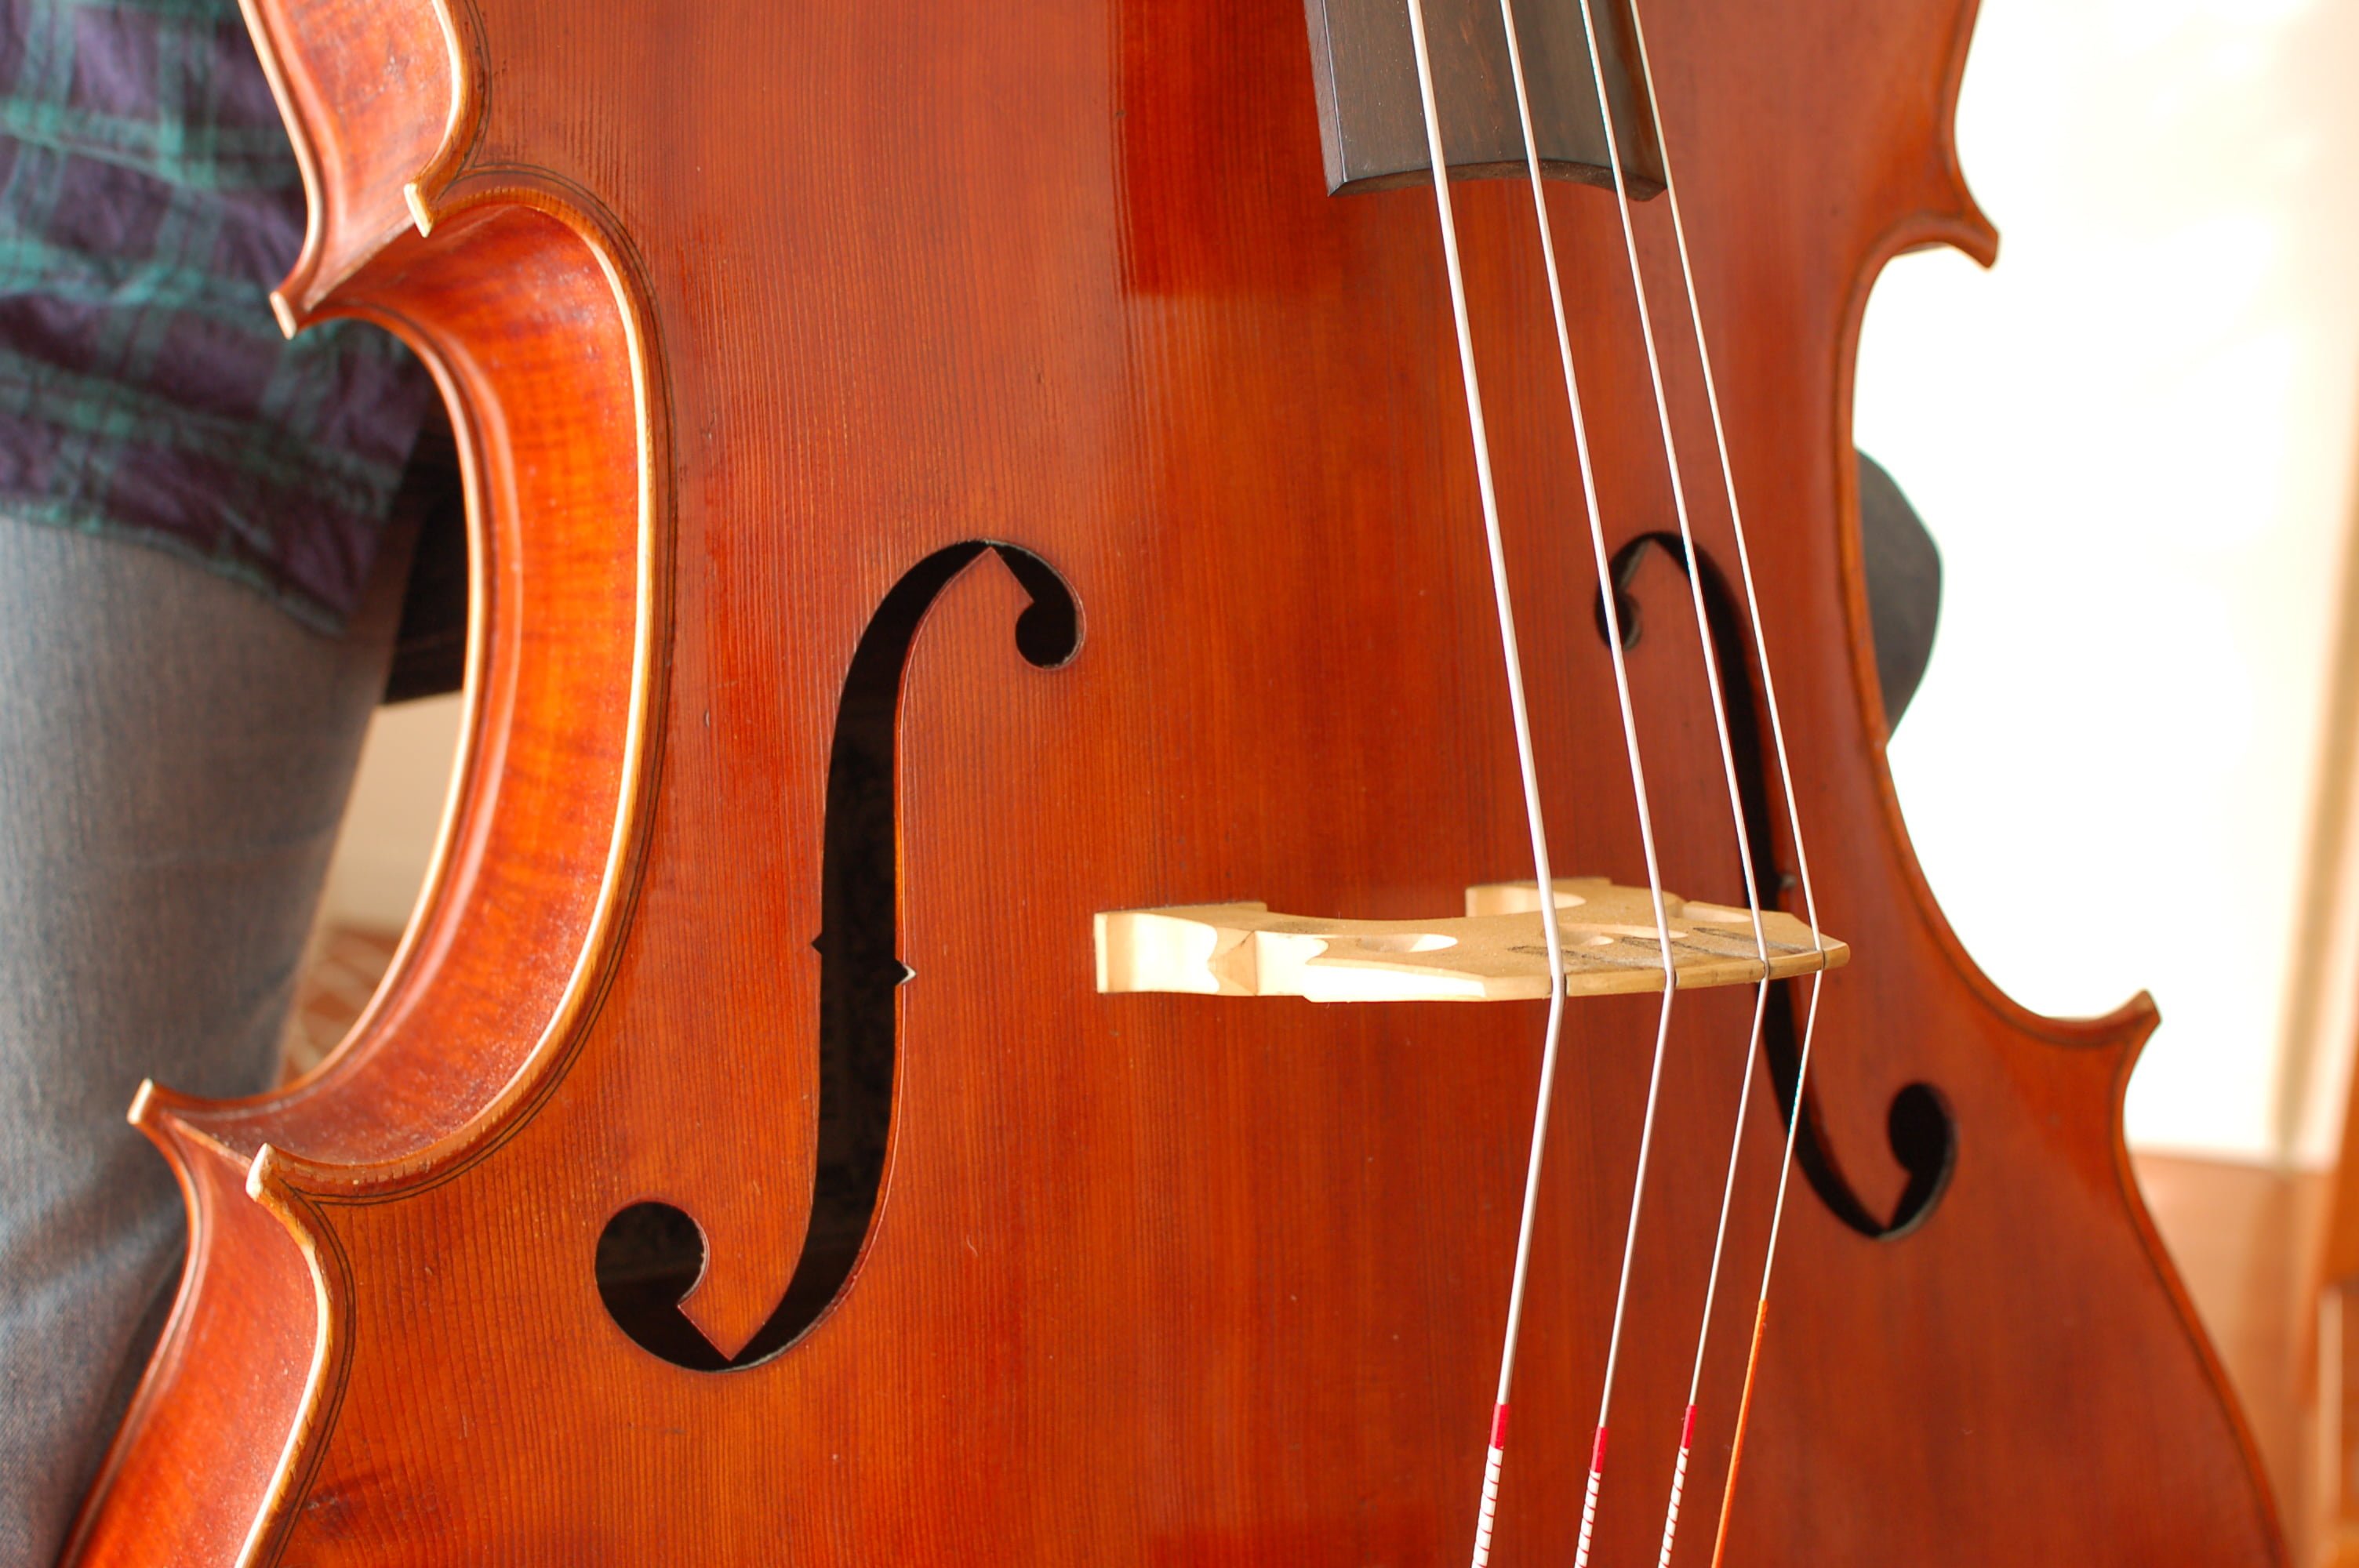 弦にこびりついた松脂を、簡単に取り除けるストリングクリーナーとは？